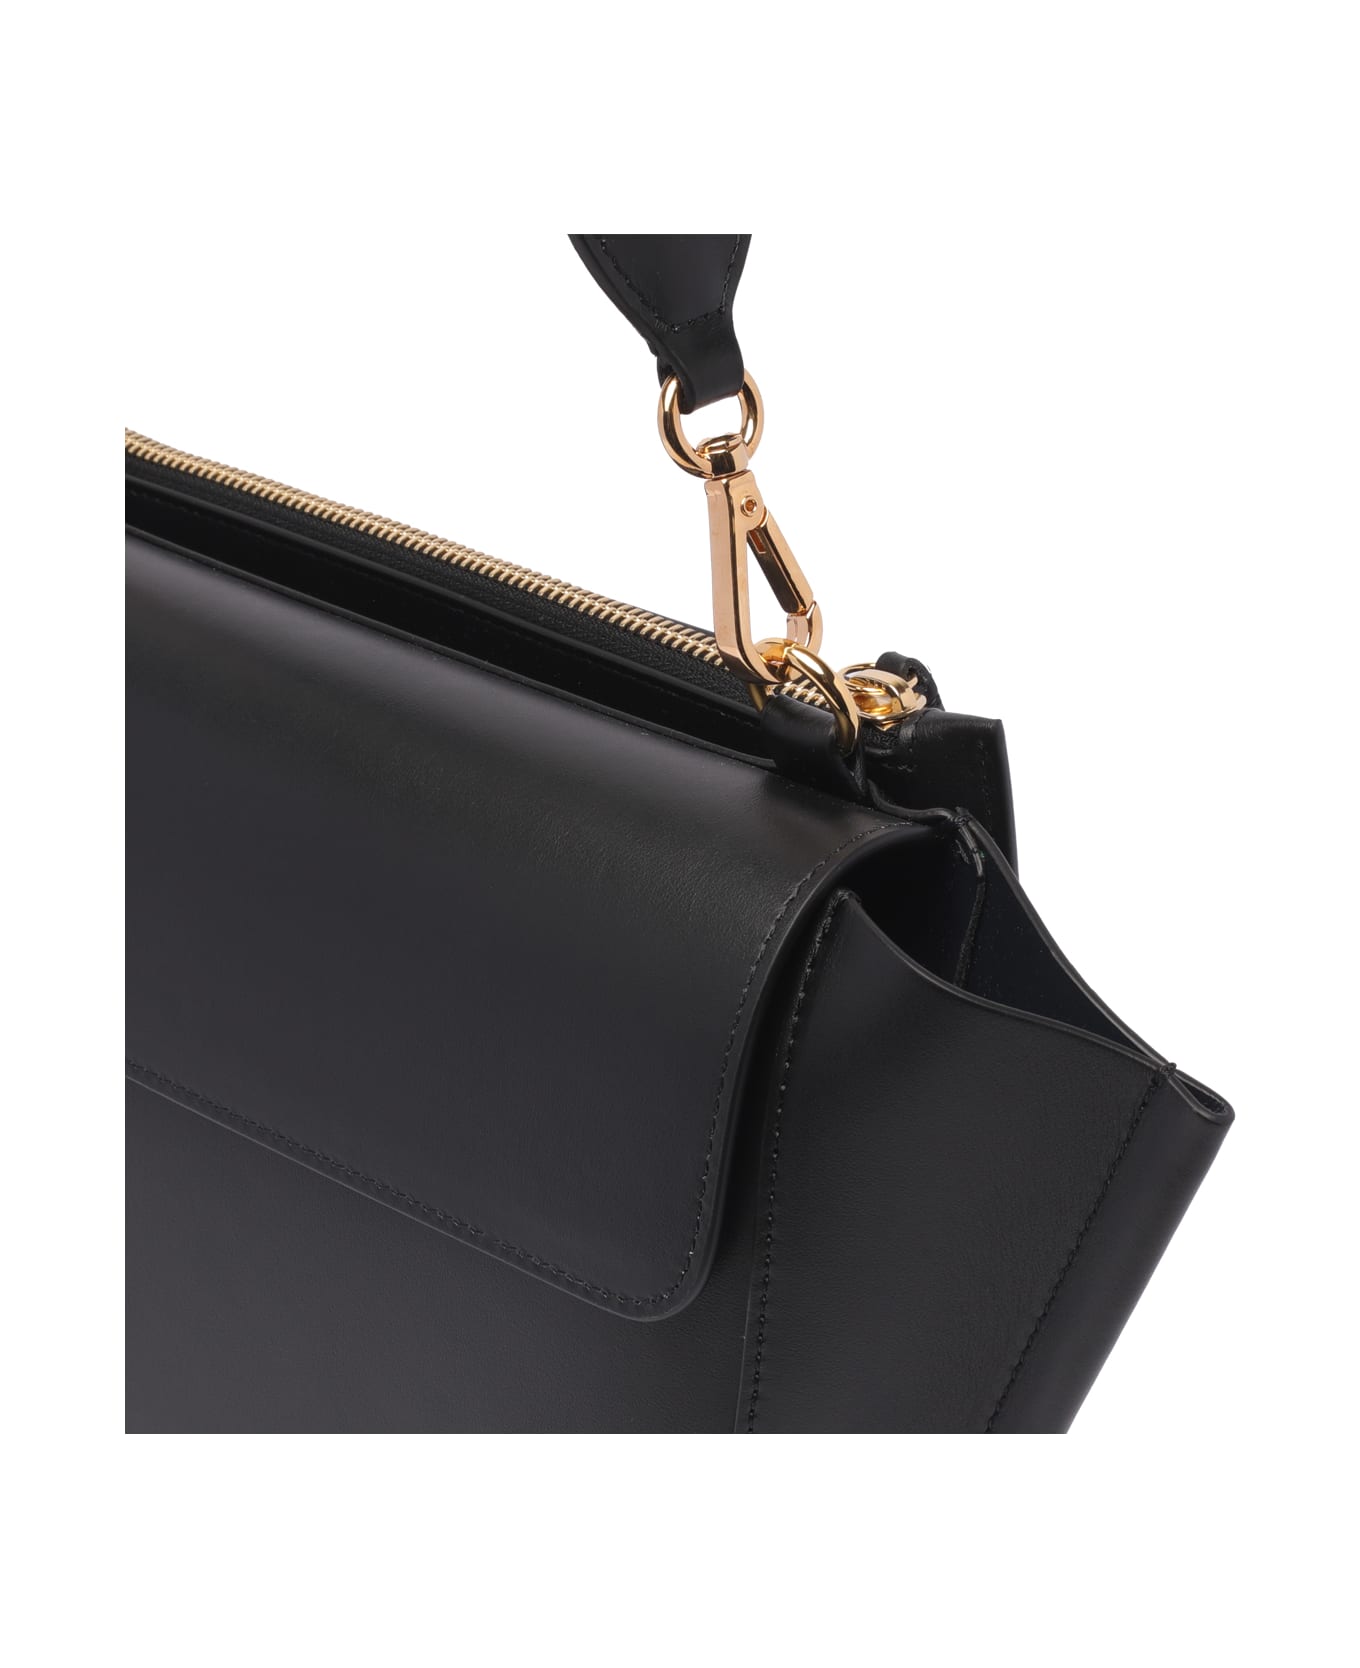 Wandler Medium Hortensia Handbag - Black トートバッグ